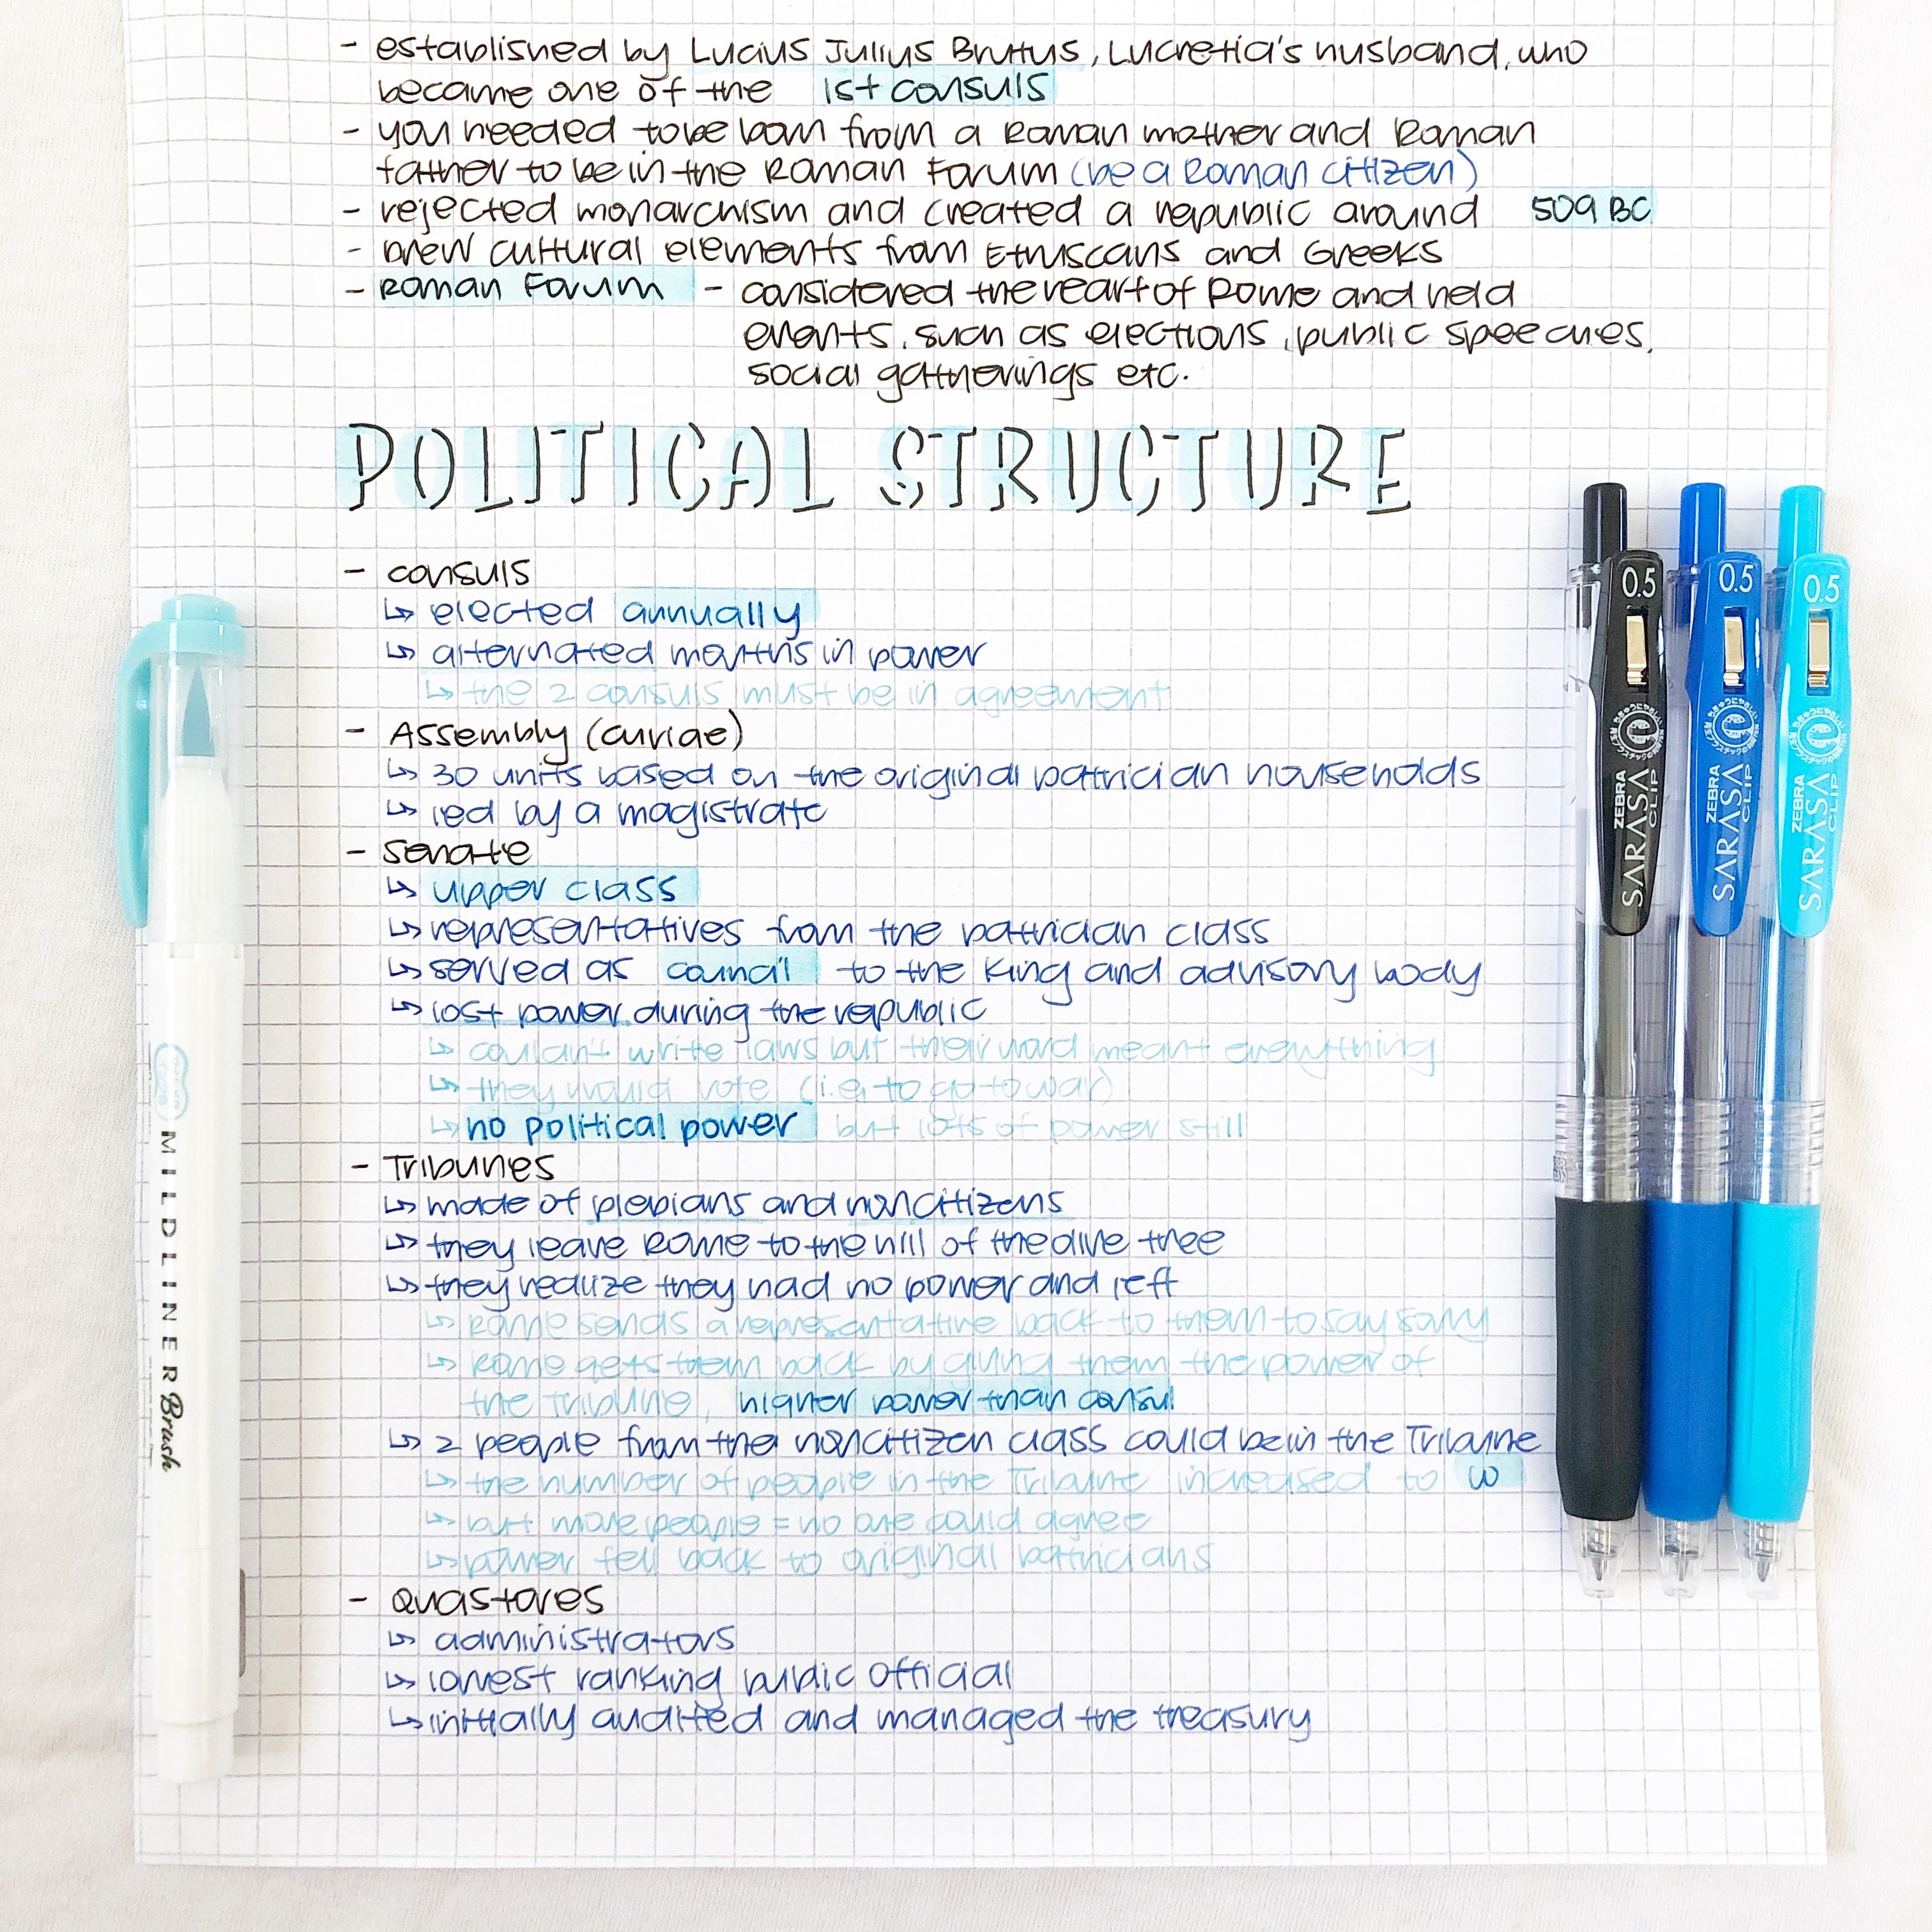 How to Create Beautiful StudyGram Notes – Zebra Pen